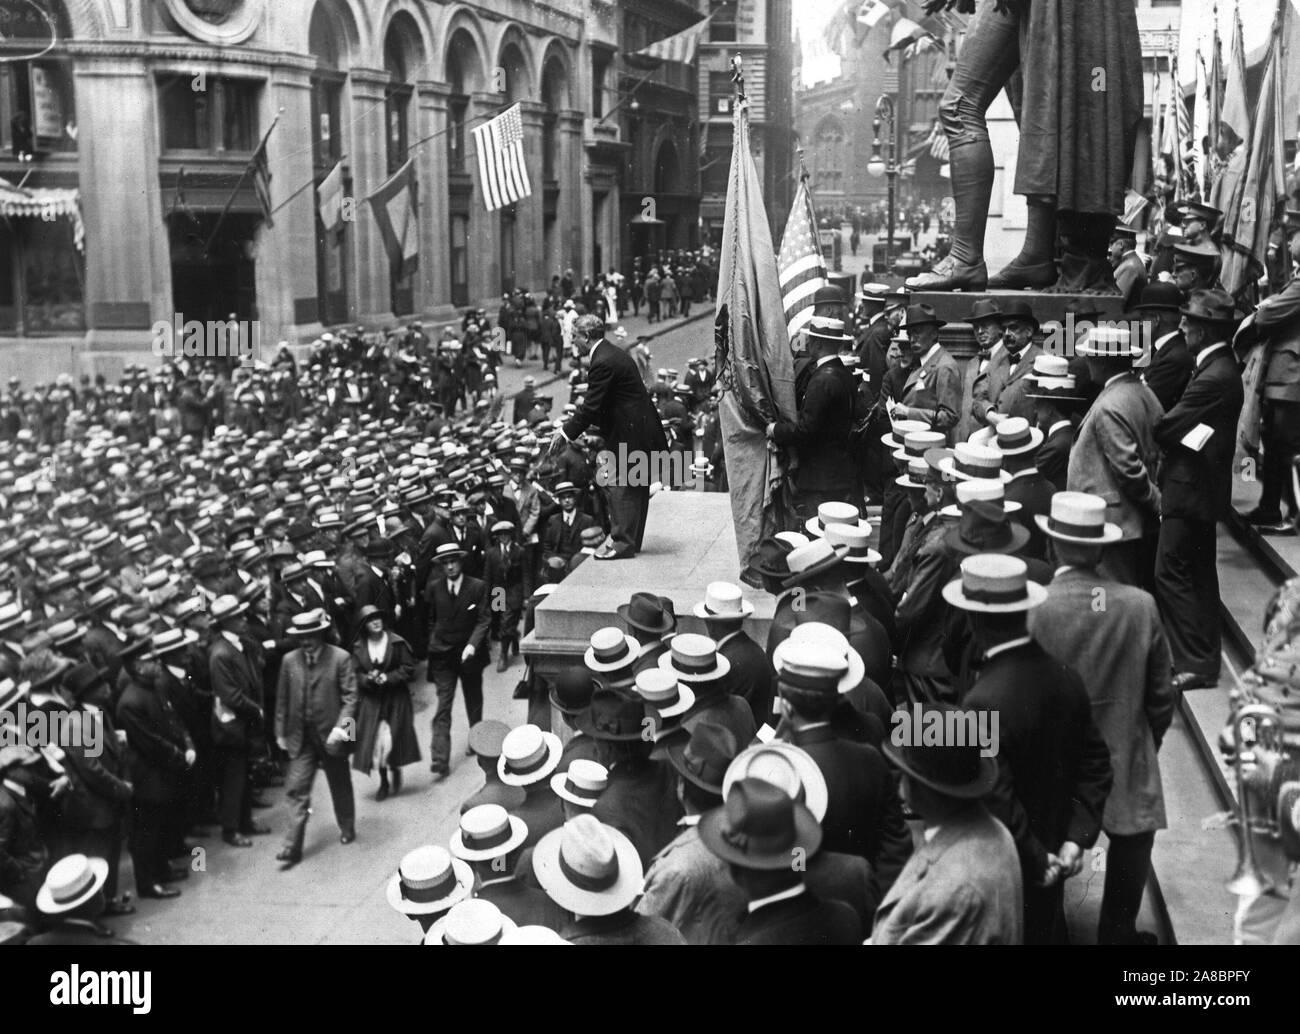 Zeremonien - Flag Day, 1918 - Flag Tag Adresse, New York City. Dr. Thomas Edward Green eine Markierungsfahne Tag Adresse vor der Treasury Geb. zu großen Menschenmengen Stockfoto